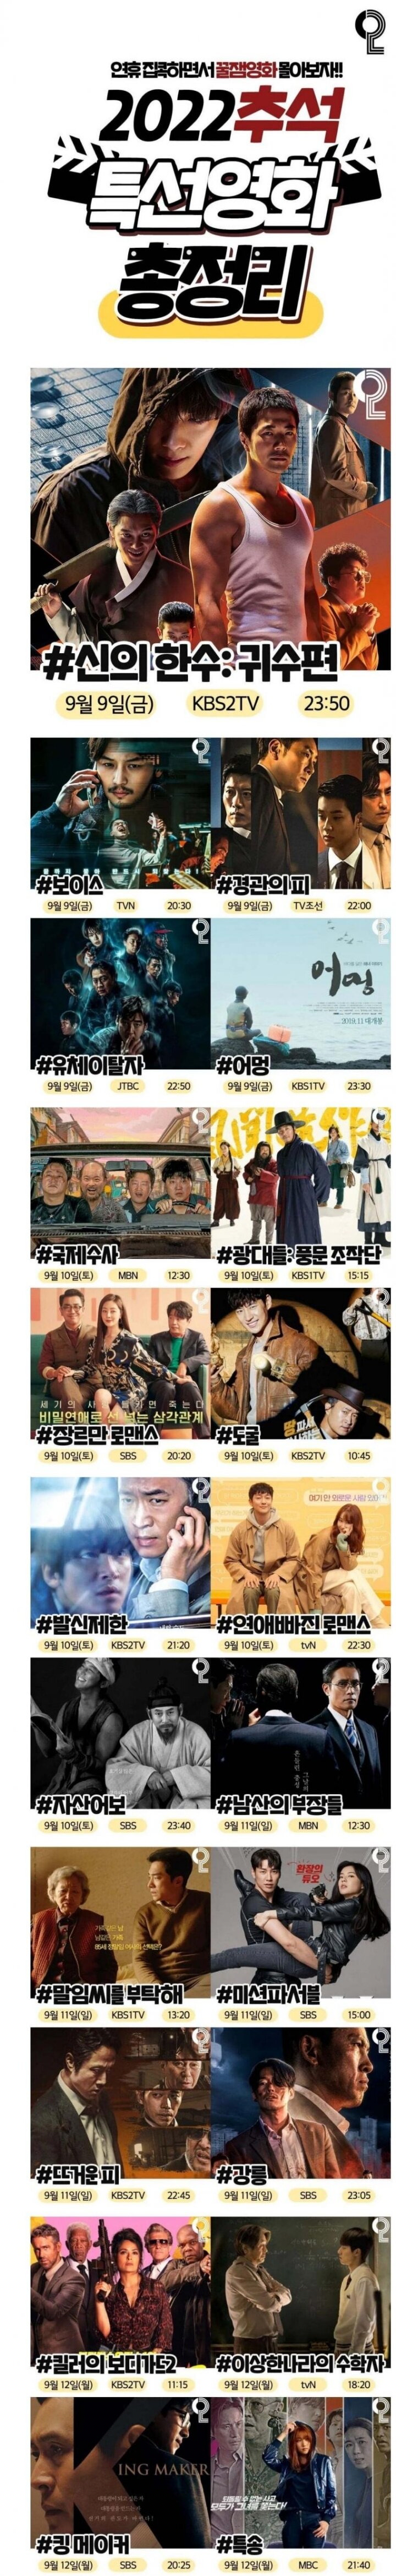 22년 추석기념 방송사별 특선영화 목록과 무료영화 정보